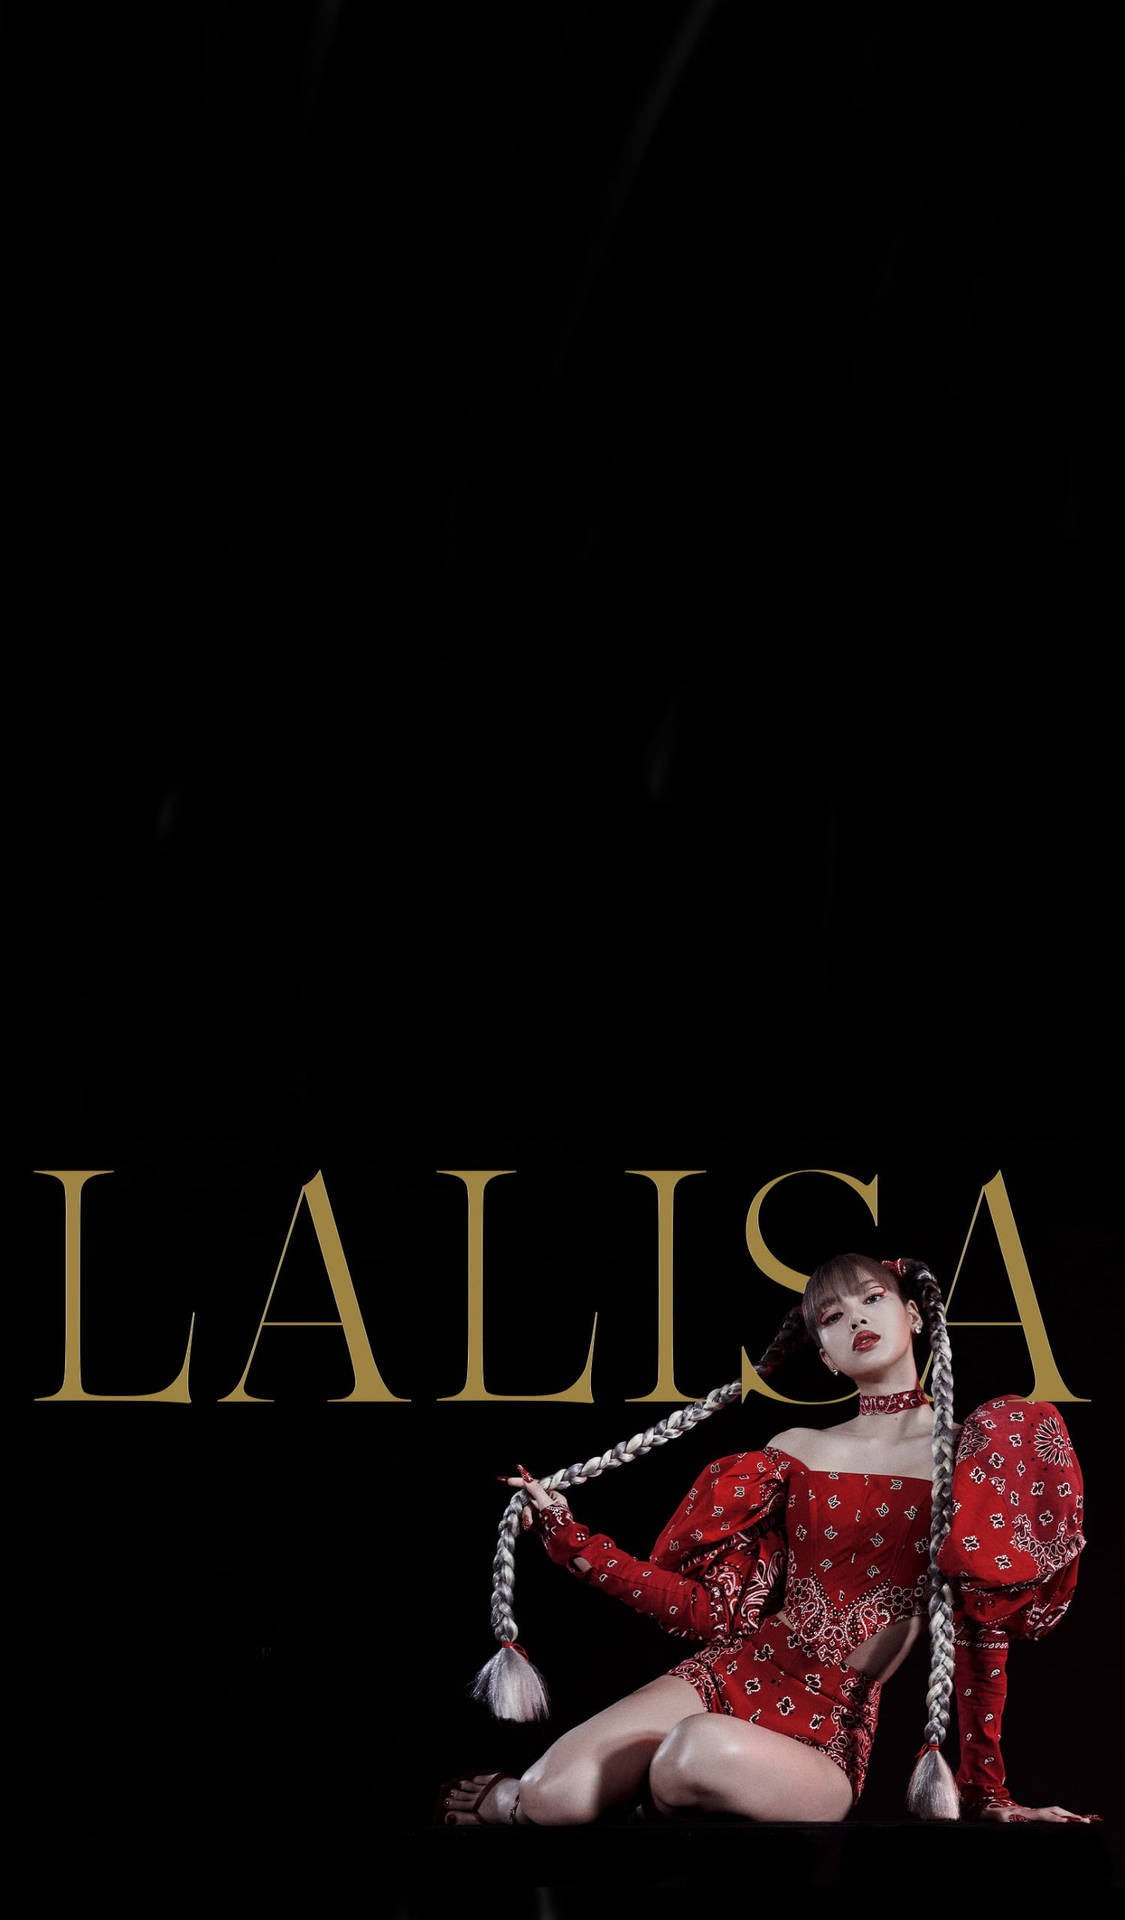 Lisablackpink Hd Musikvideo Lalisa Affisch. Wallpaper